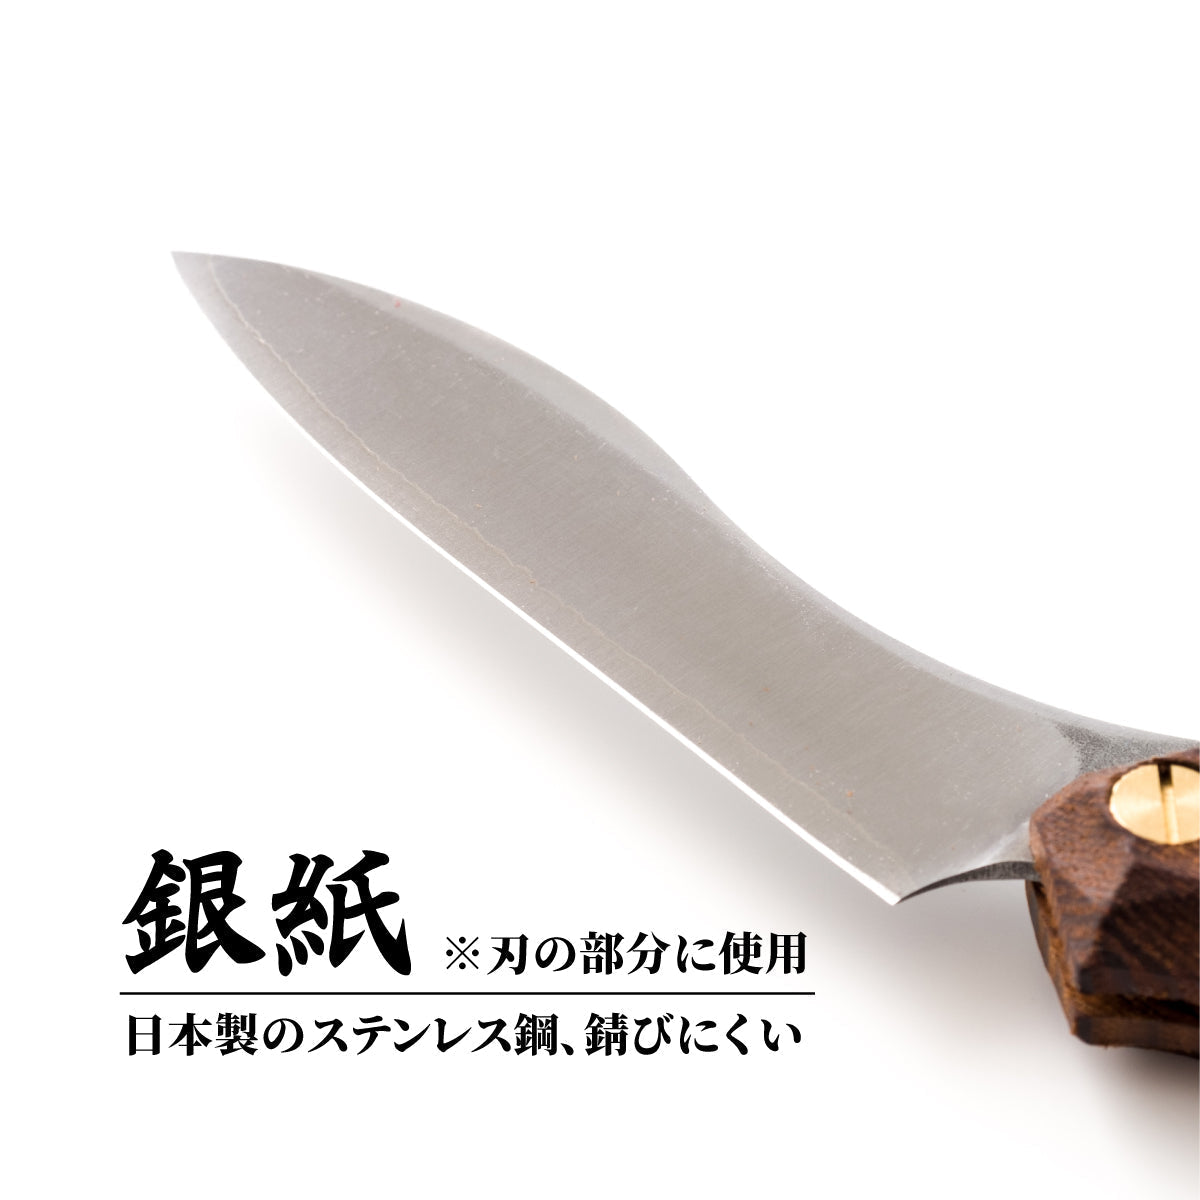 超お得【新品・未使用】Fedeca フェデカ 折畳式料理ナイフ プレーンオリーブ ナイフ・ツール